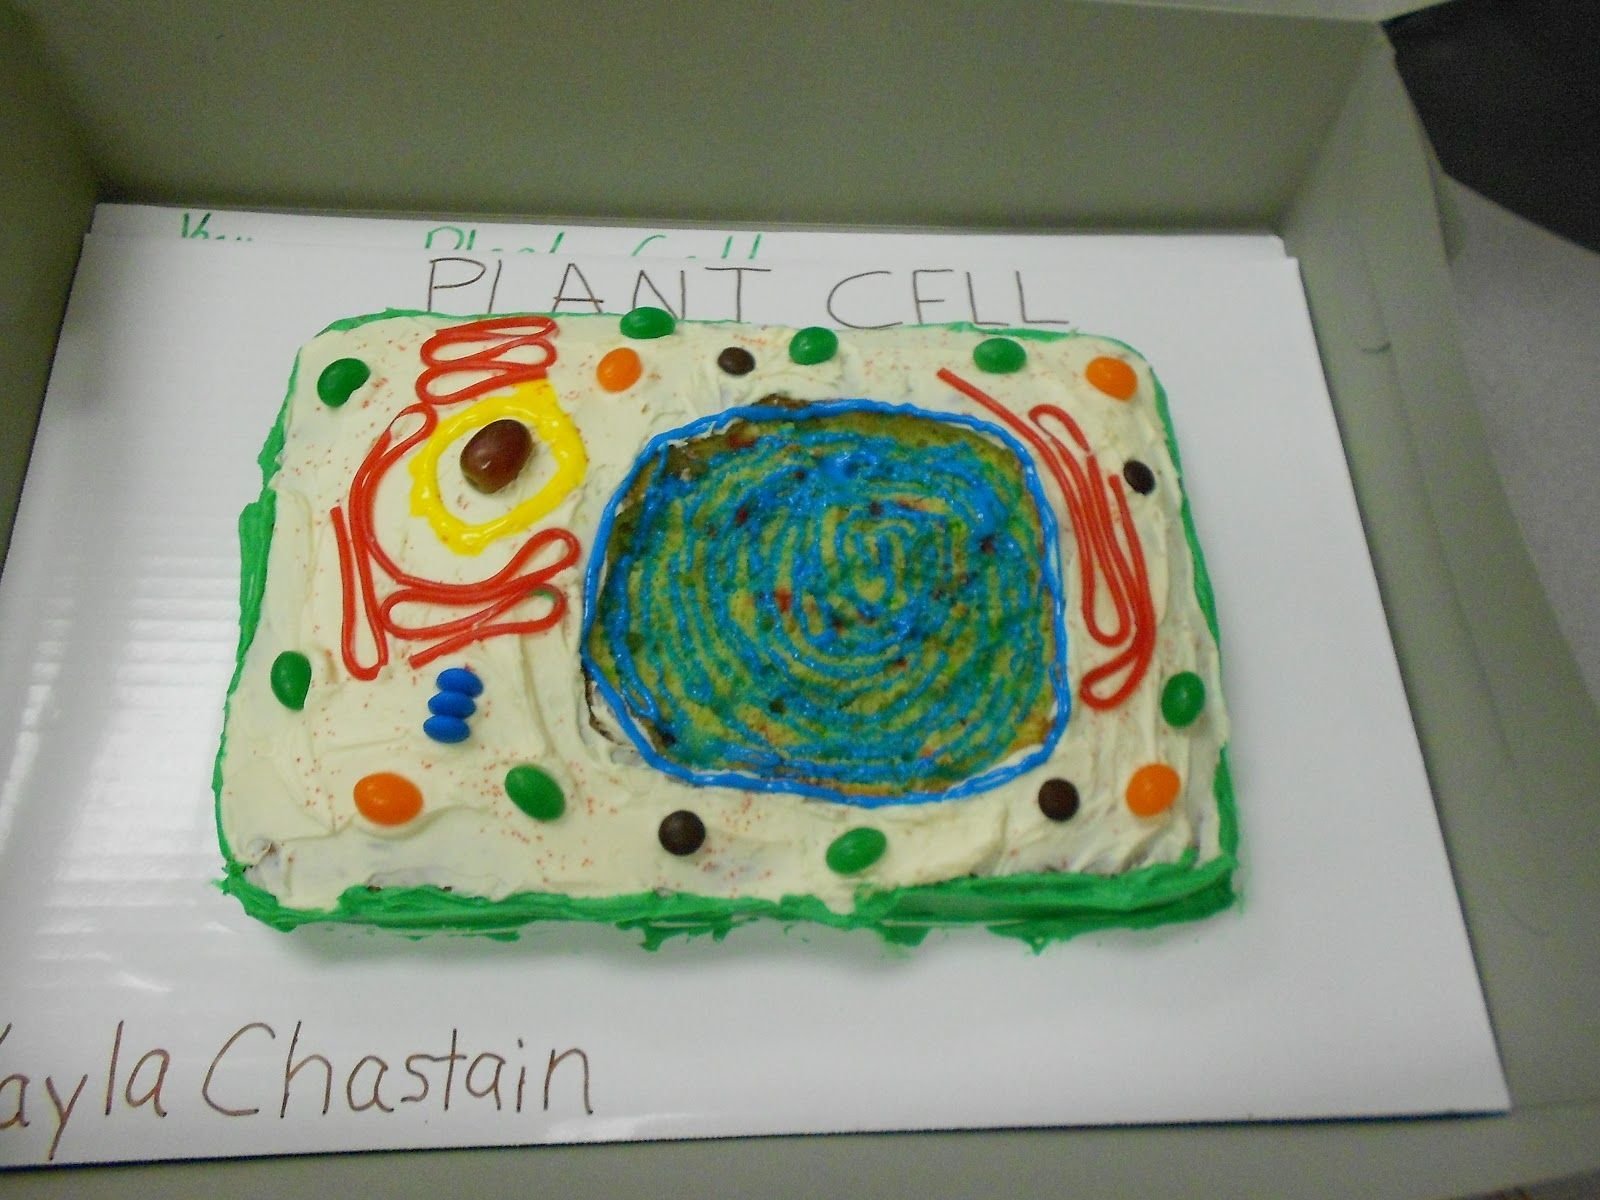 Биология из пластилина. Модель растительной клетки из пластилина 5 класс биология. Модель клетки из пластилина 5 класс биология. Модель растительной клетки 5 класс биология. Модель растительной клетки из пластилина.